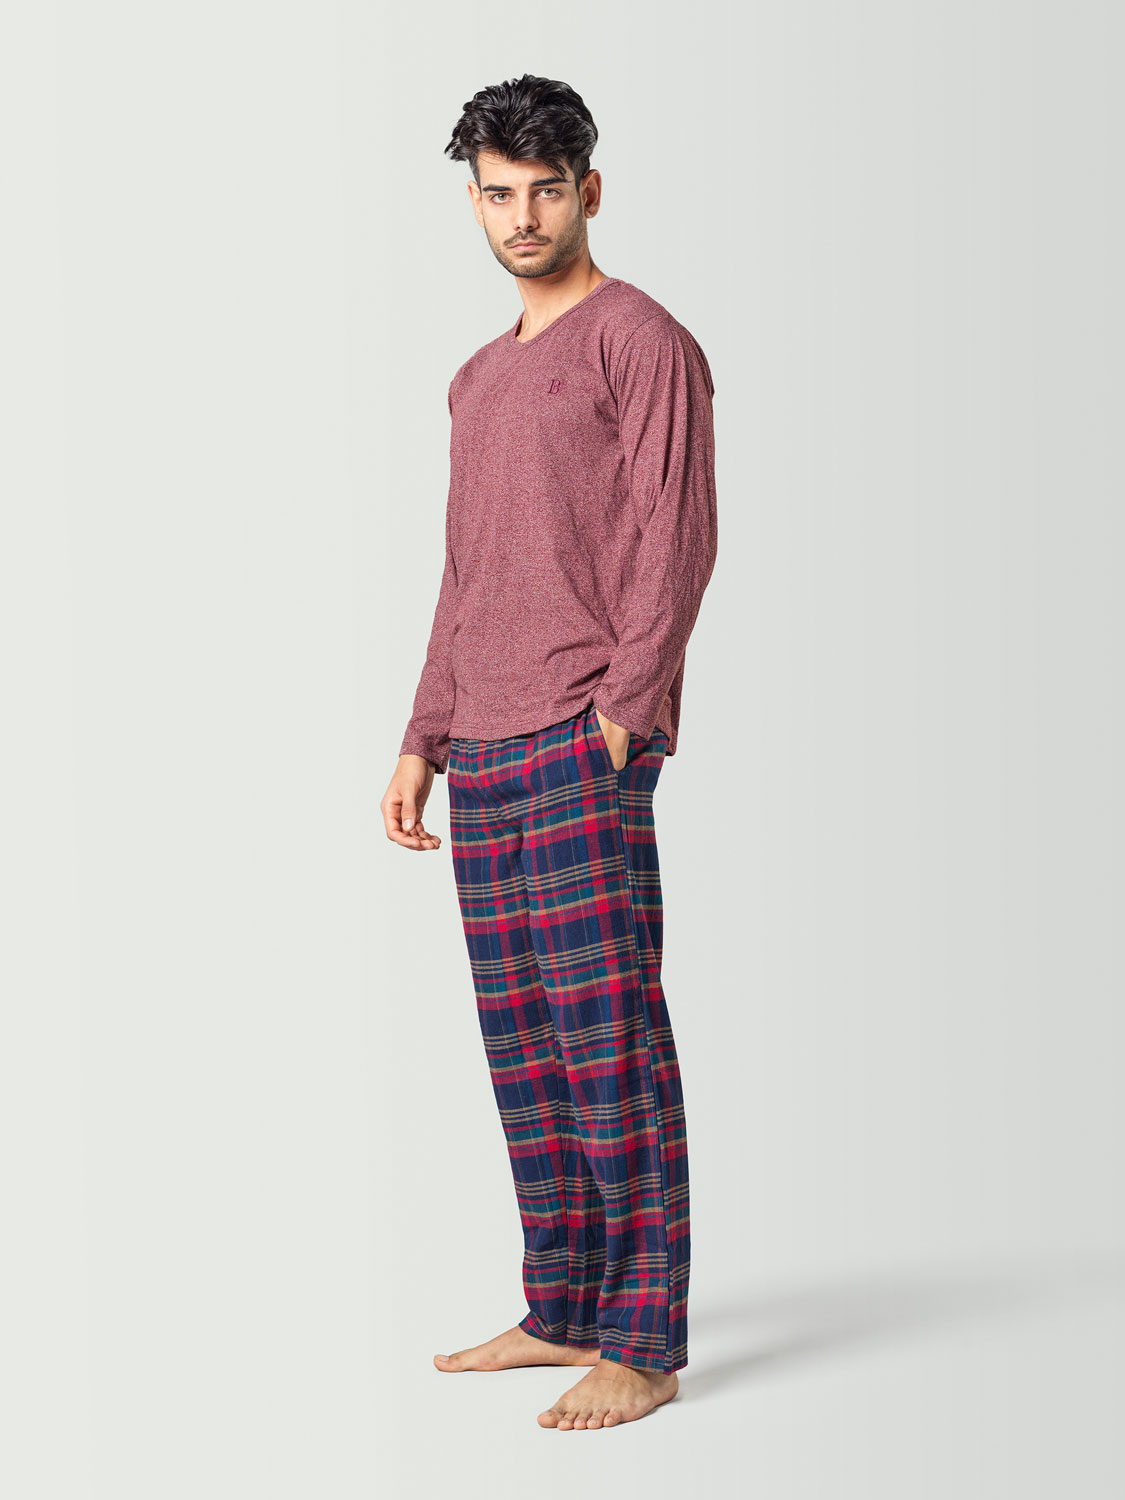 Pijama para hombre con camiseta de manga larga roja y pantalón a cuadros azul y rojo